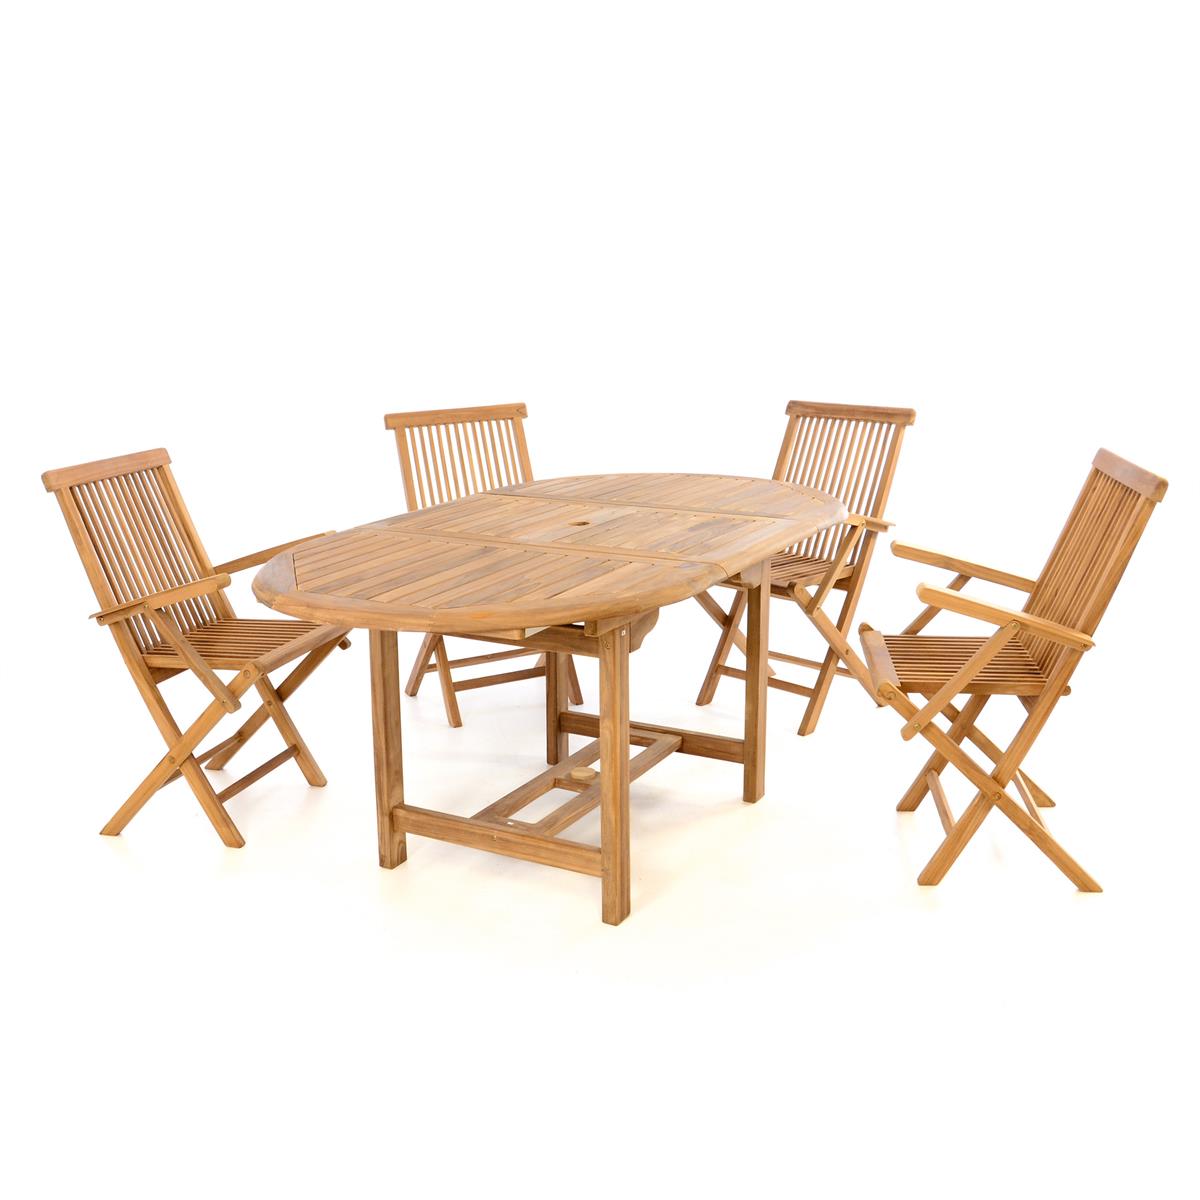 DIVERO Set Gartenmöbel Sitzgruppe Esstisch ausziehbar Teak Holz behandelt